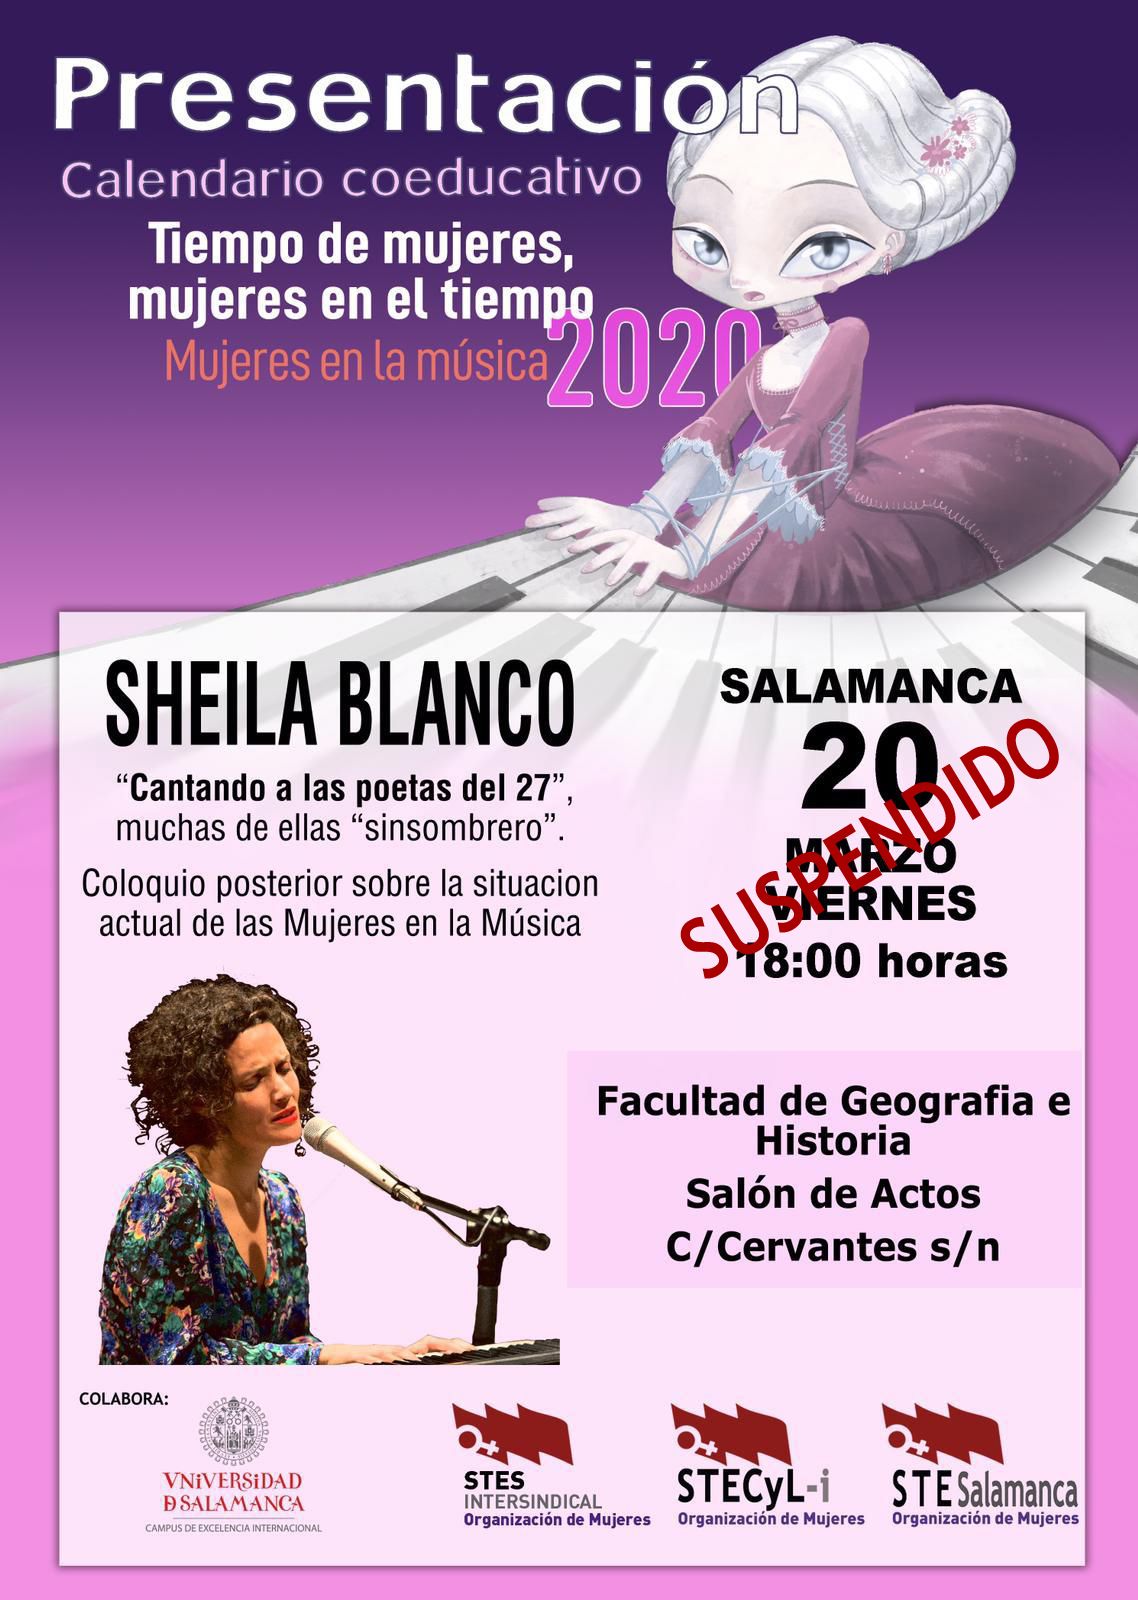 Presentacion-Calendario-2020-Salamanca-suspendido